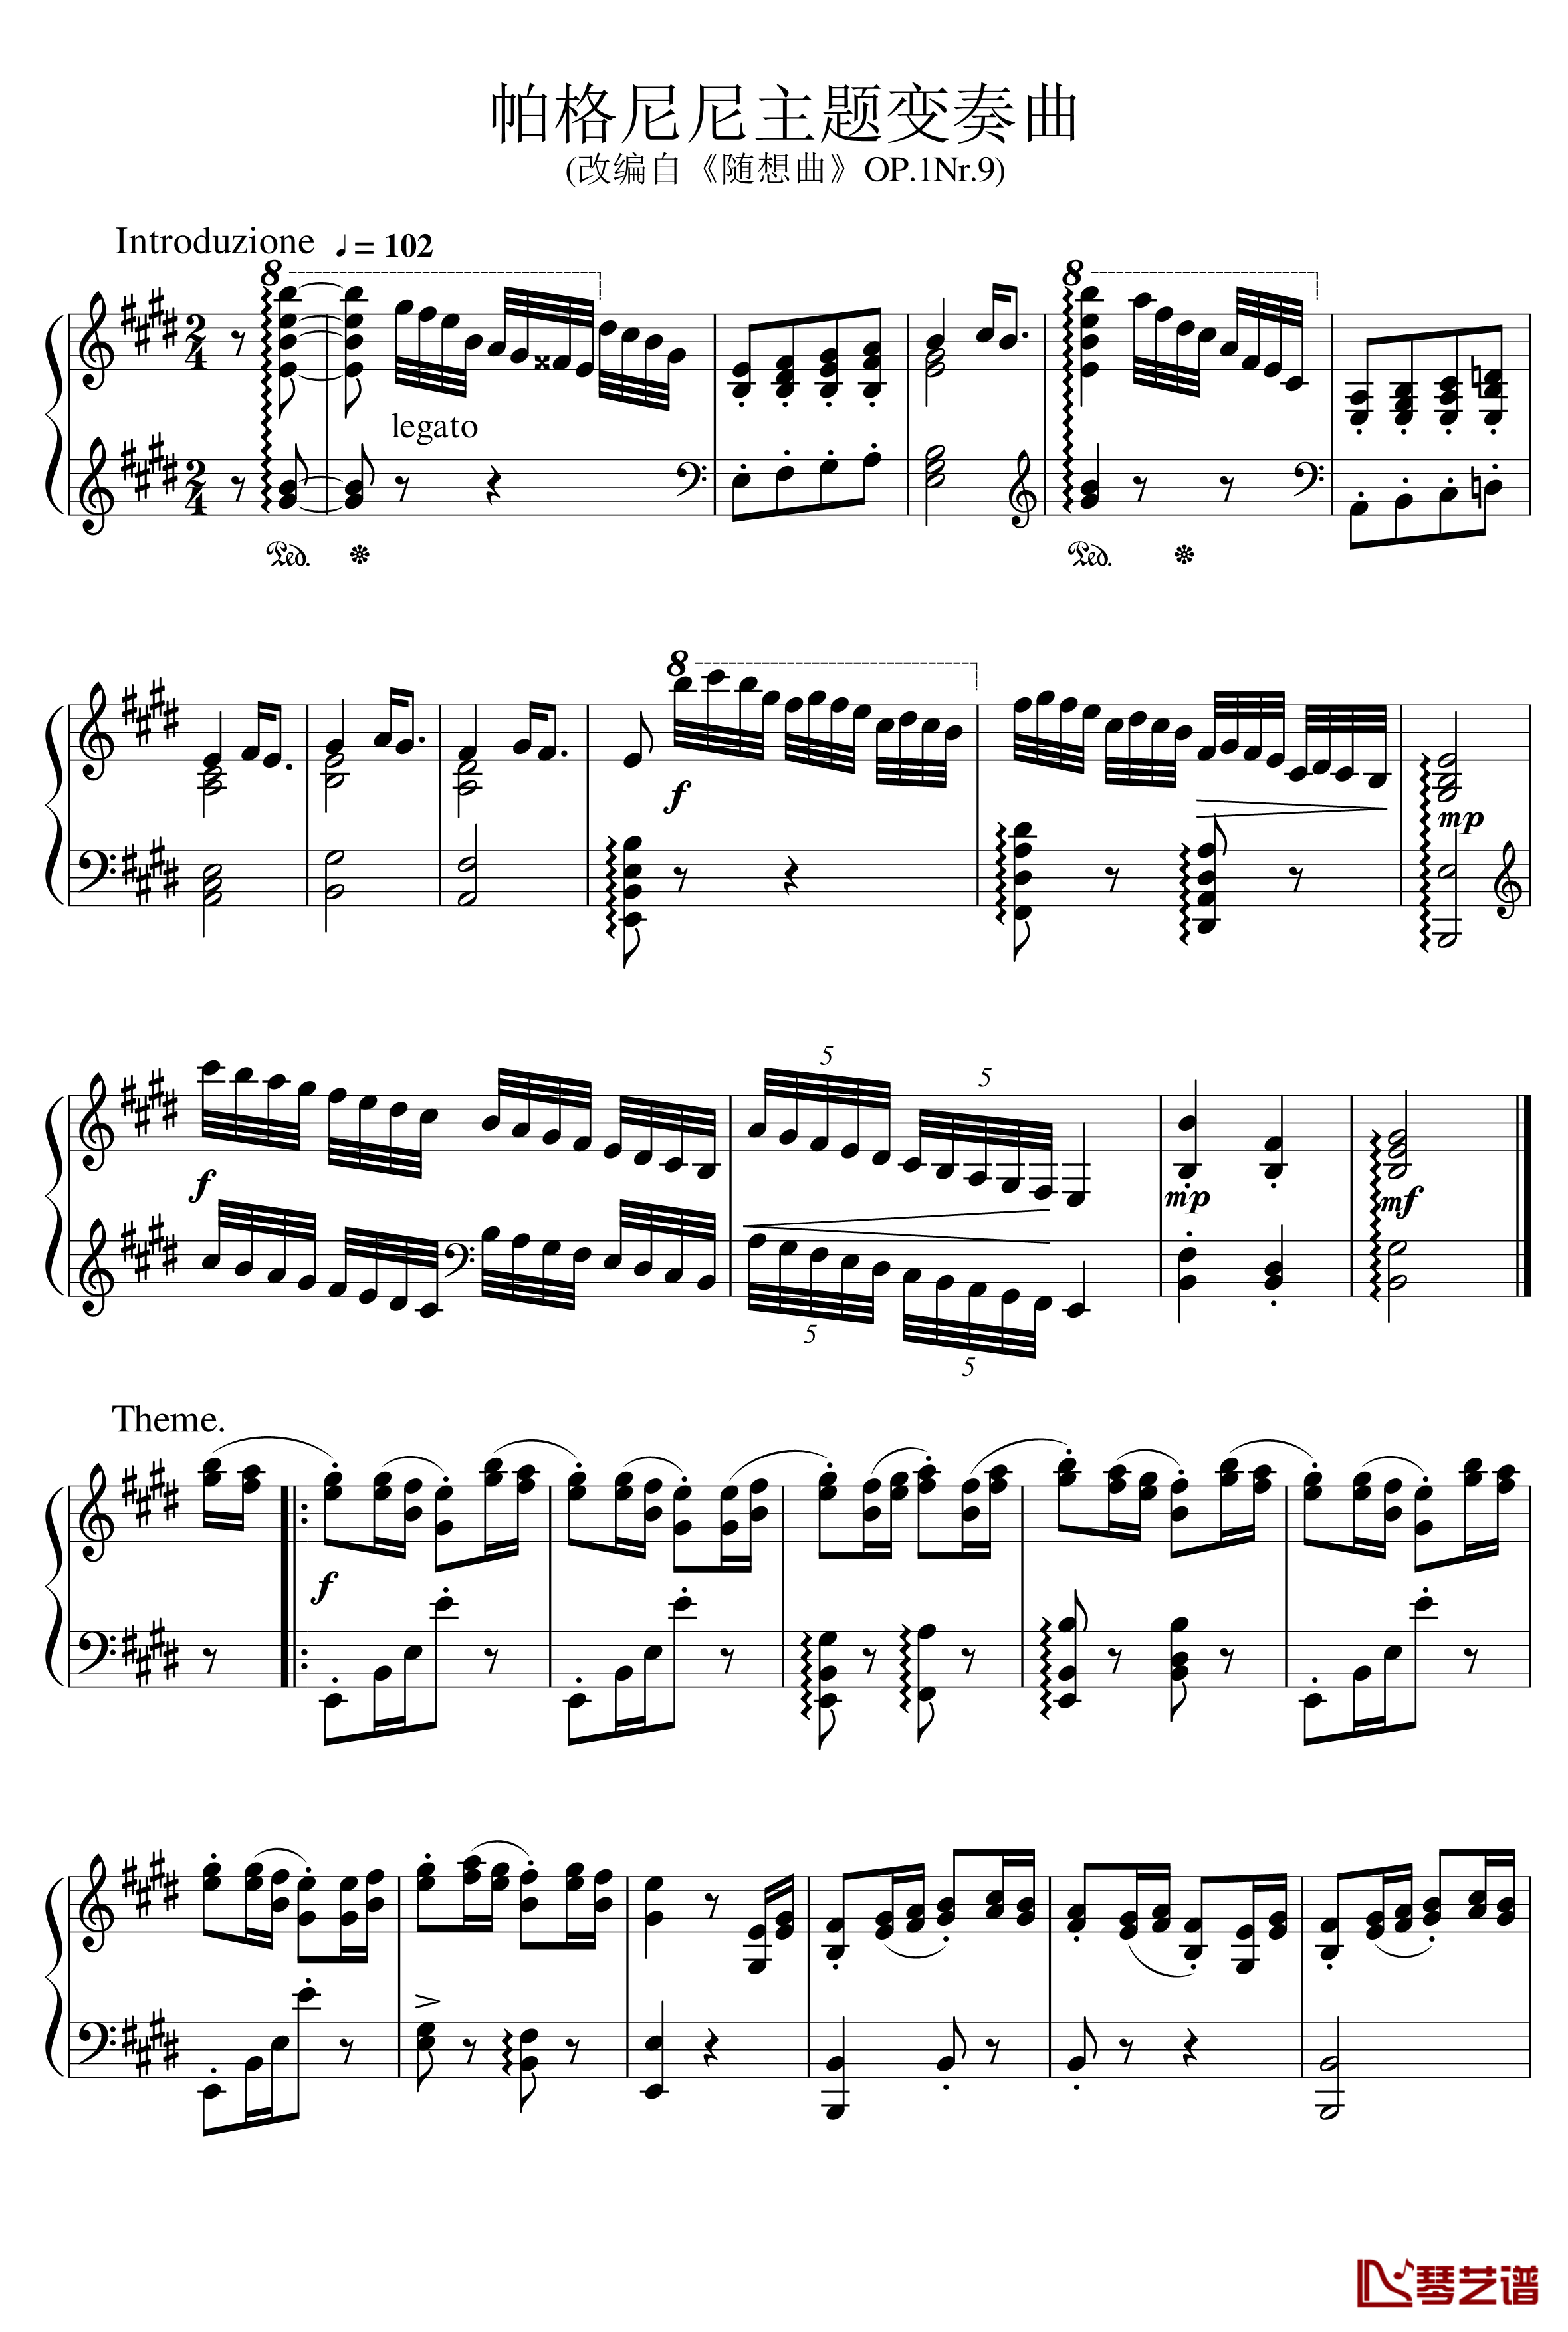 帕格尼尼主题变奏曲钢琴谱-Ice-KUN1